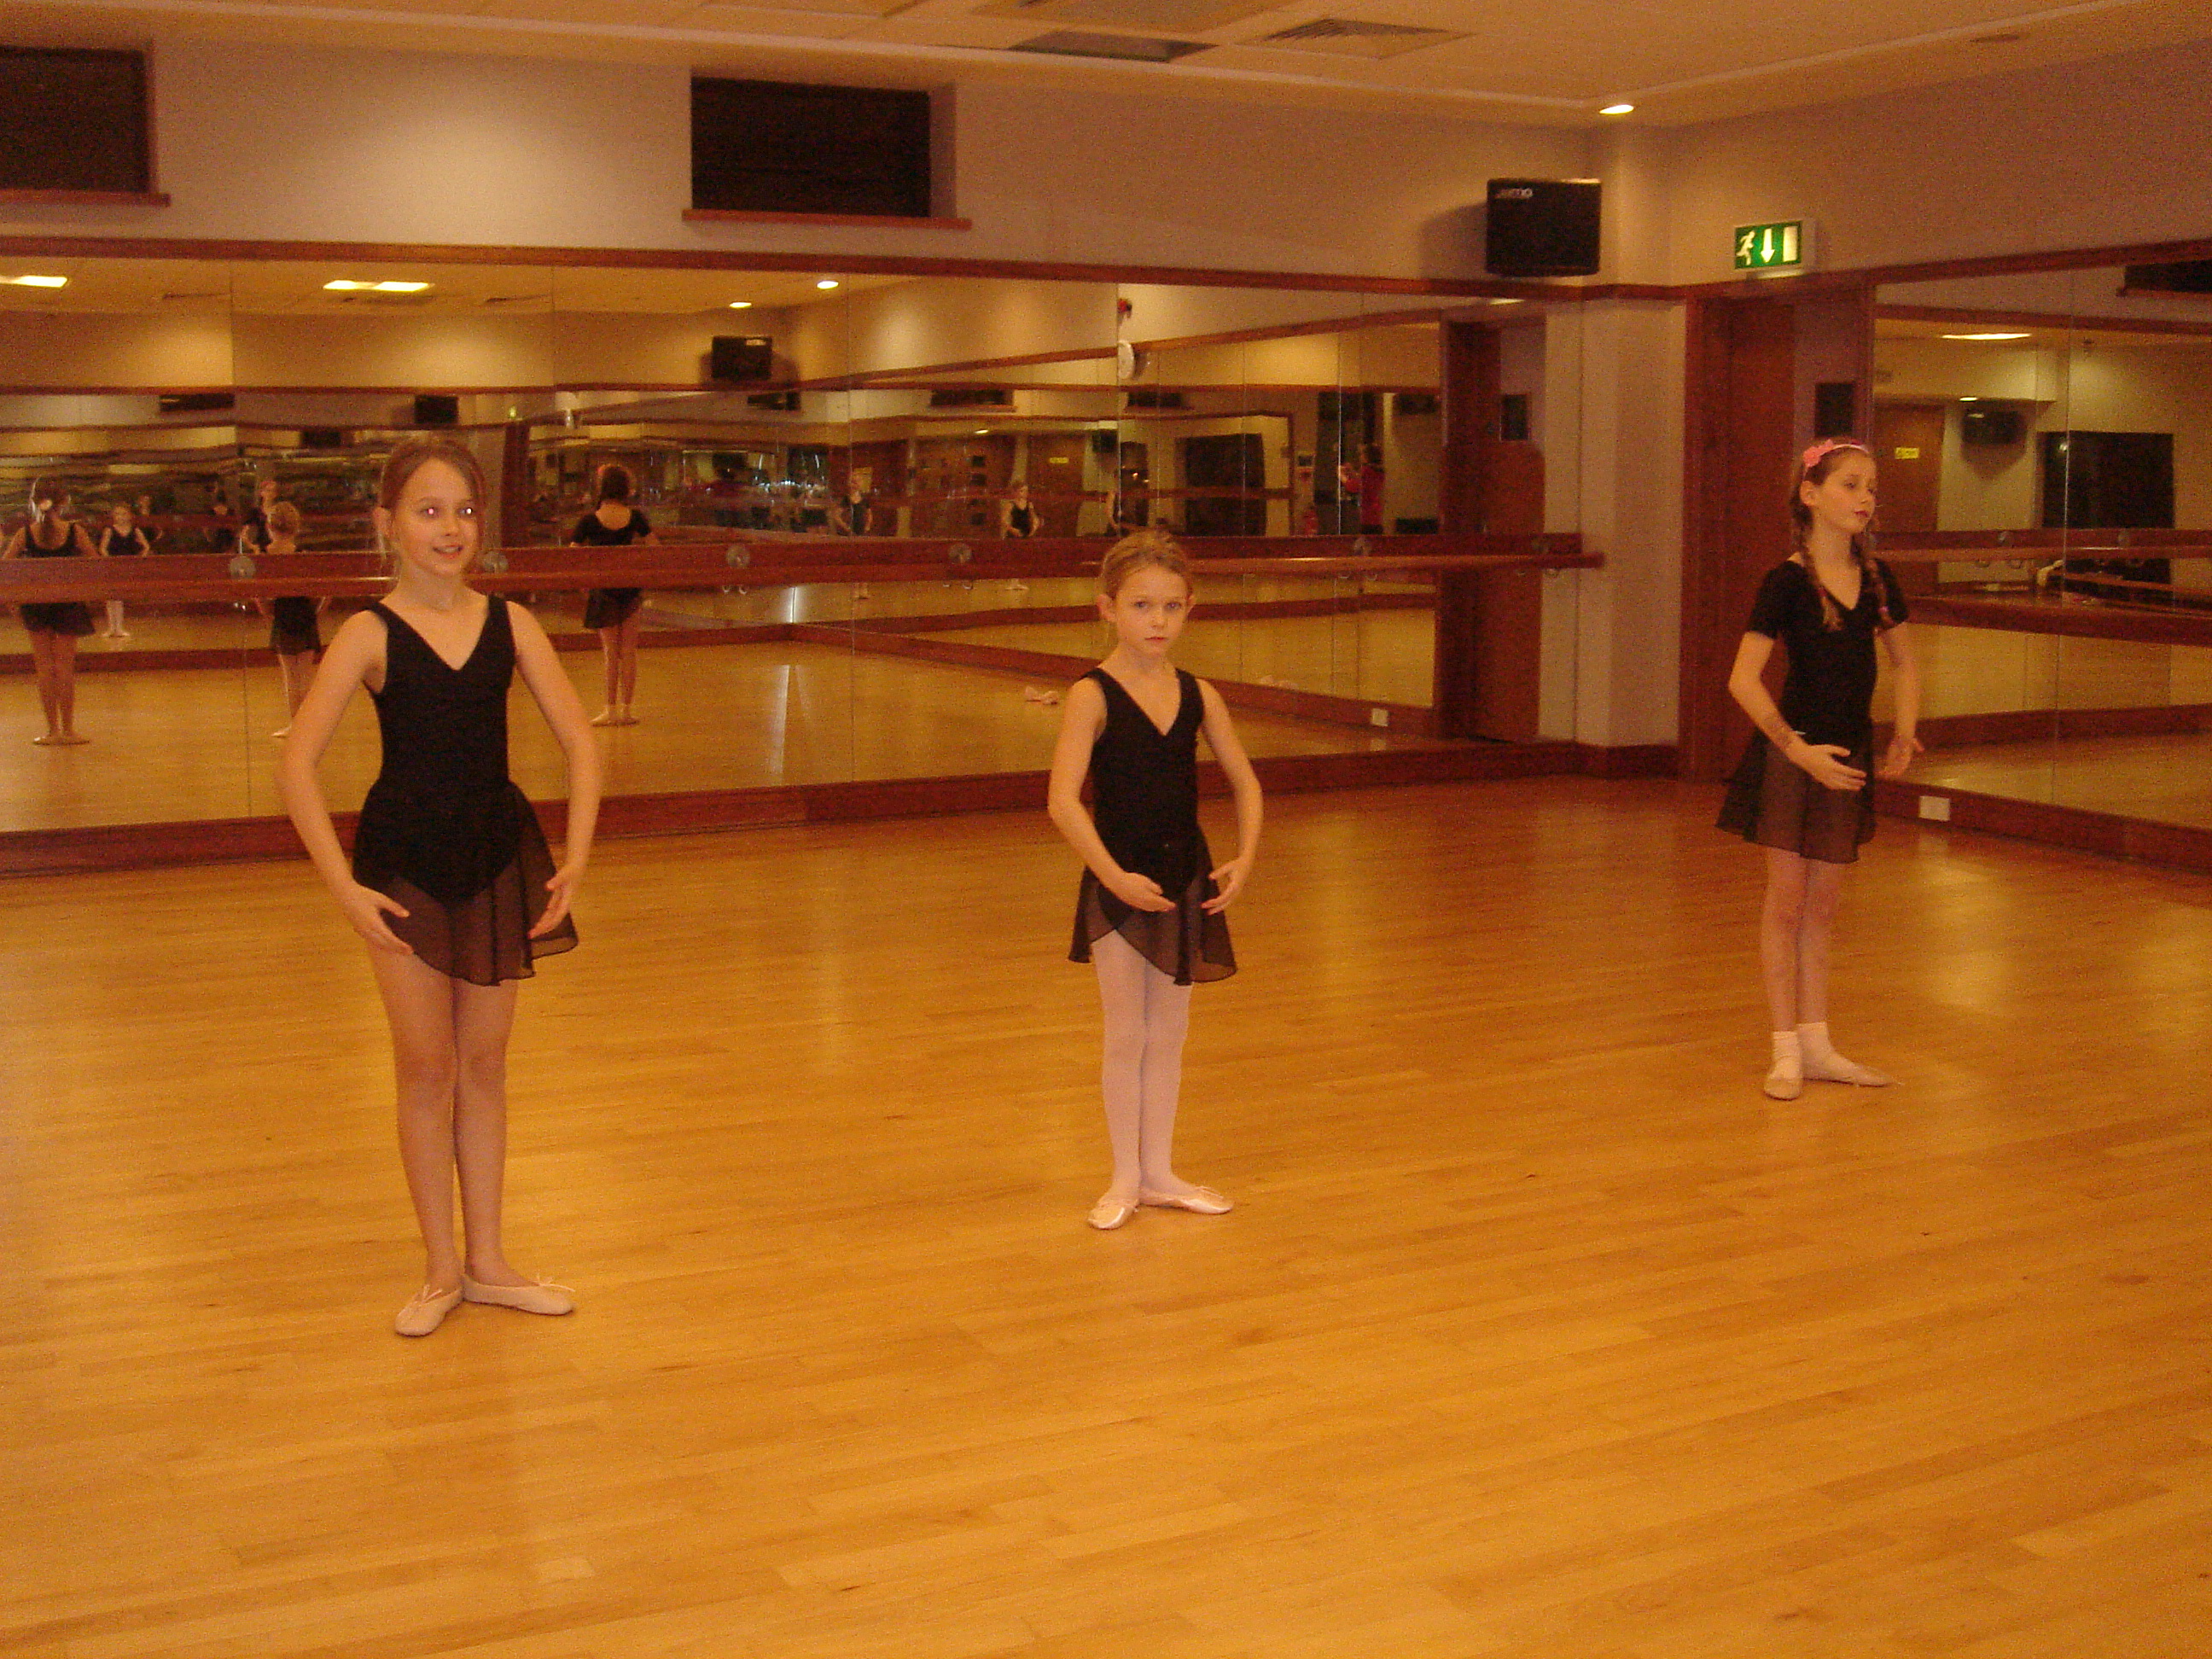 Dance Class in Progress